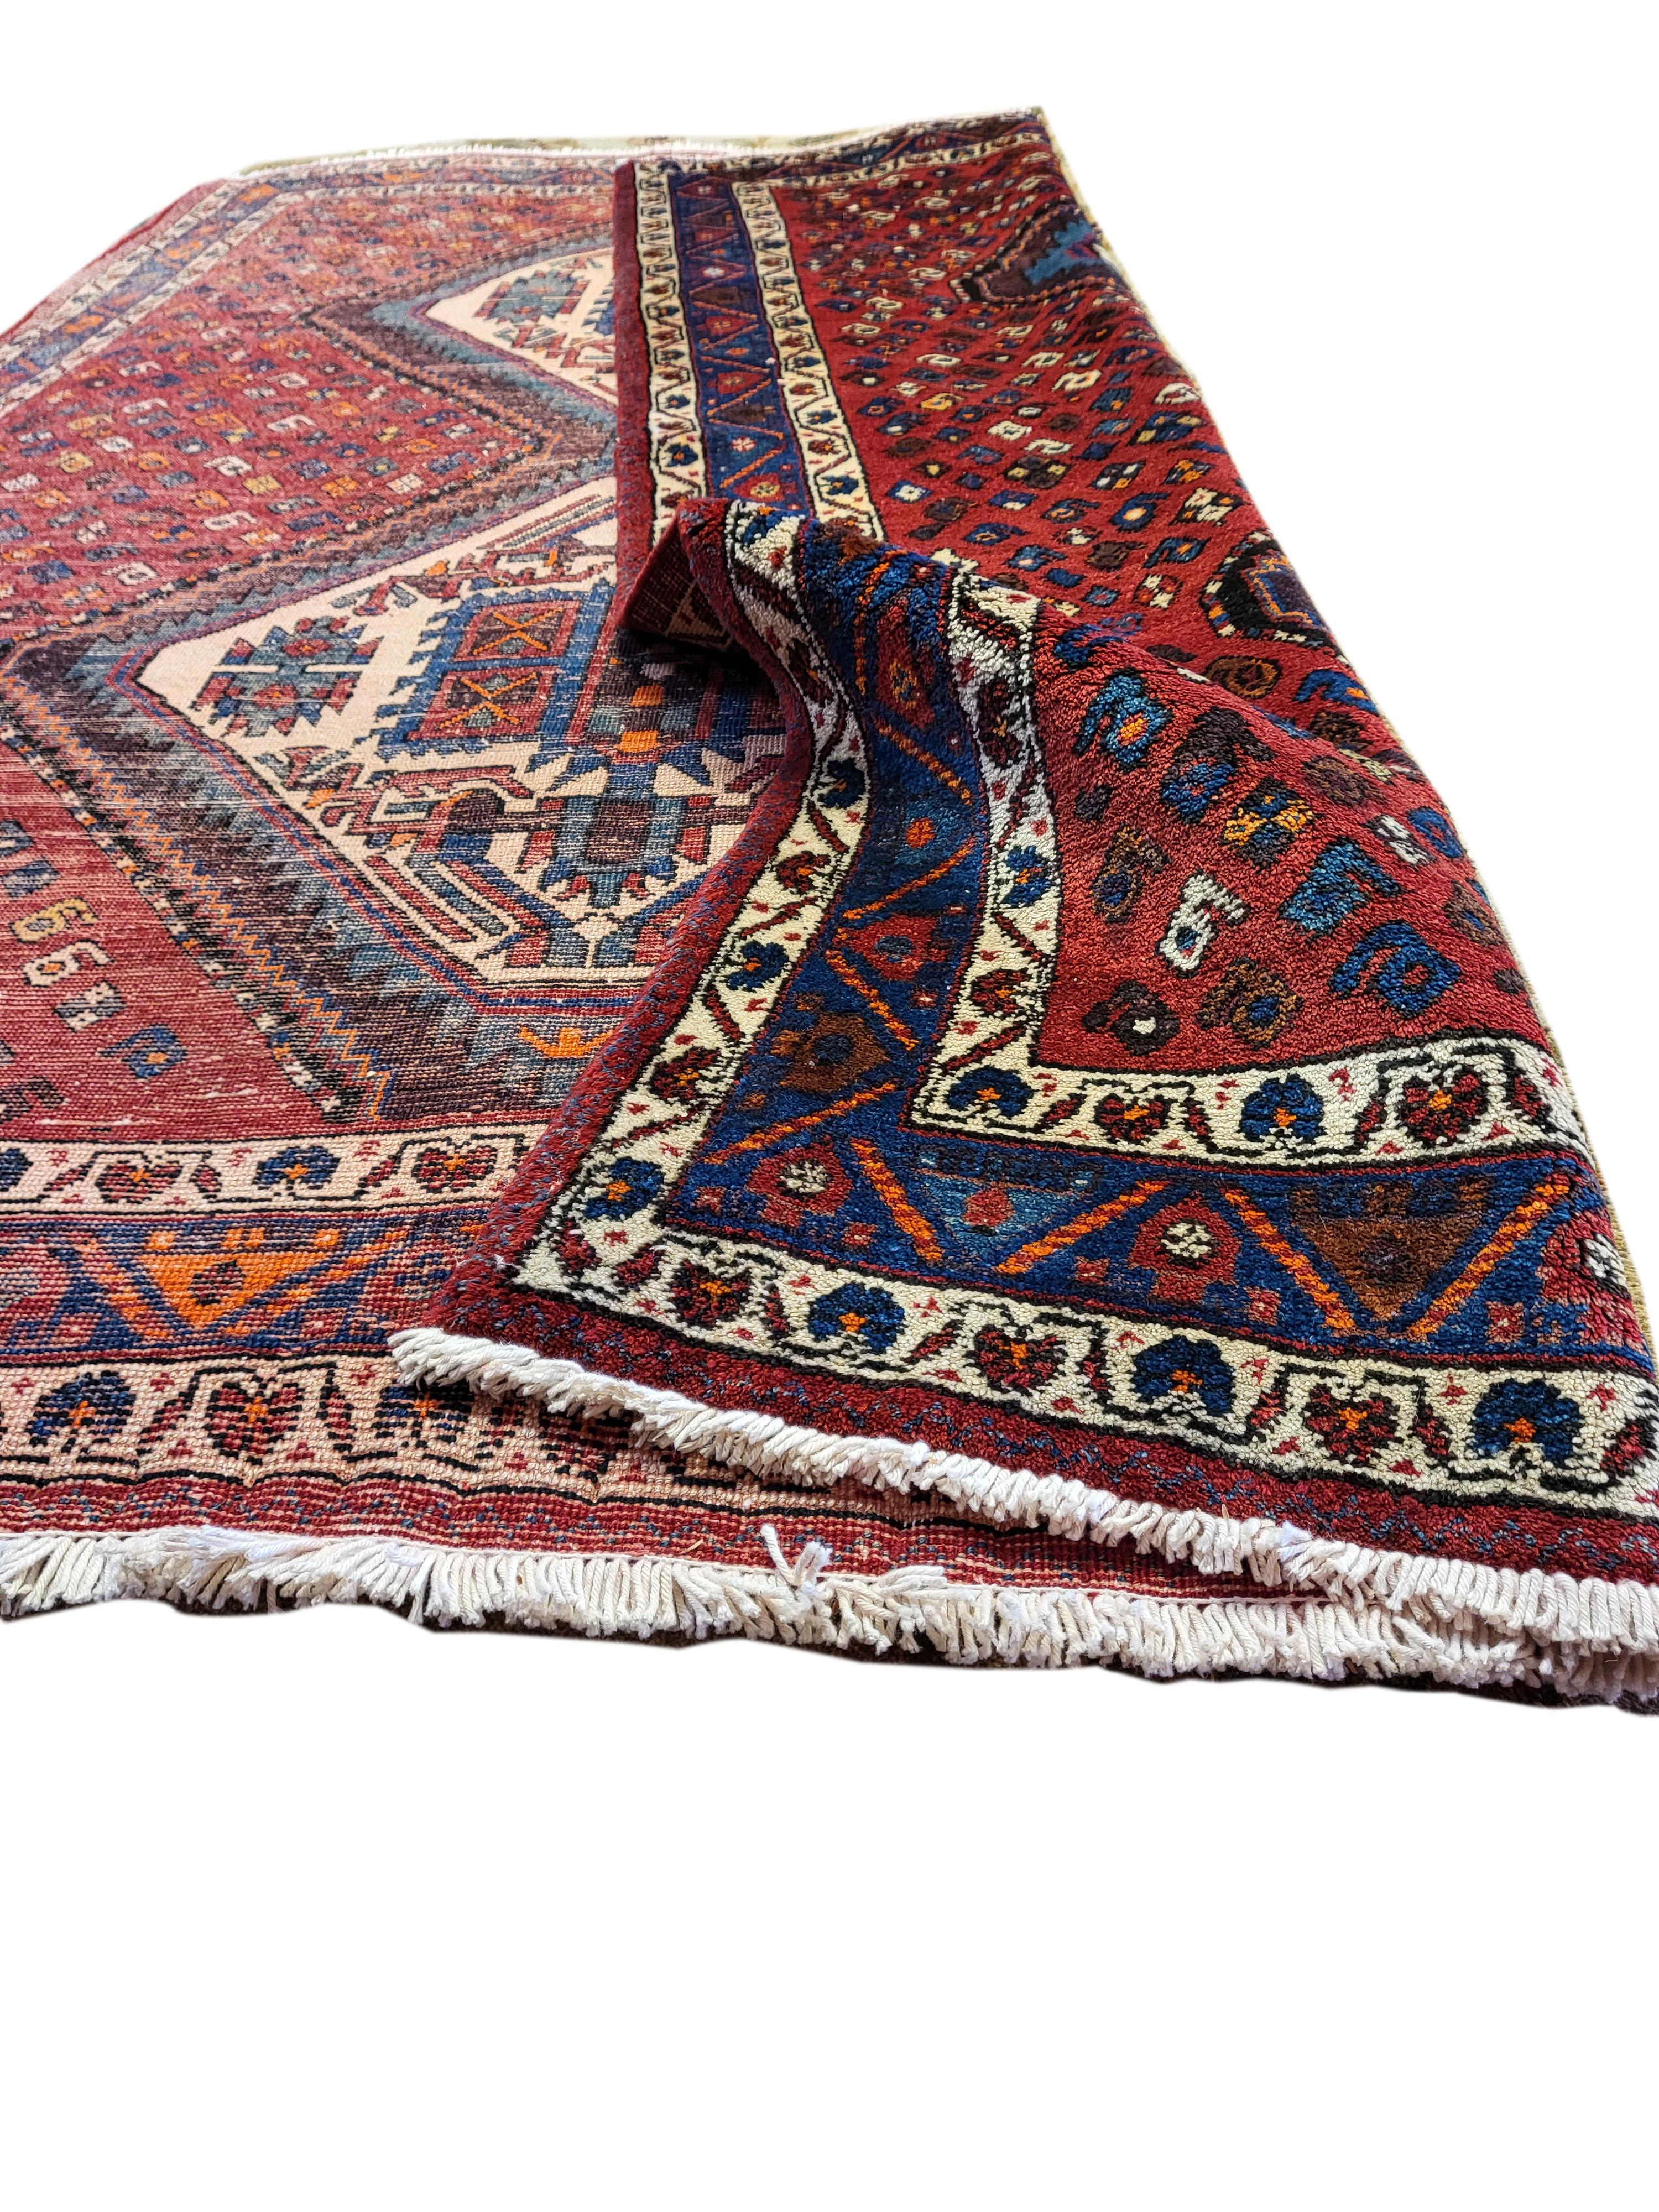 Magnifique tapis persan Sirjan-Afshar des années 50. Deux médaillons complexes sur un premier plan riche en motifs. Les couleurs et les motifs sont caractéristiques du design Sirjan/One. Le remarquable savoir-faire artisanal se reflète dans l'état